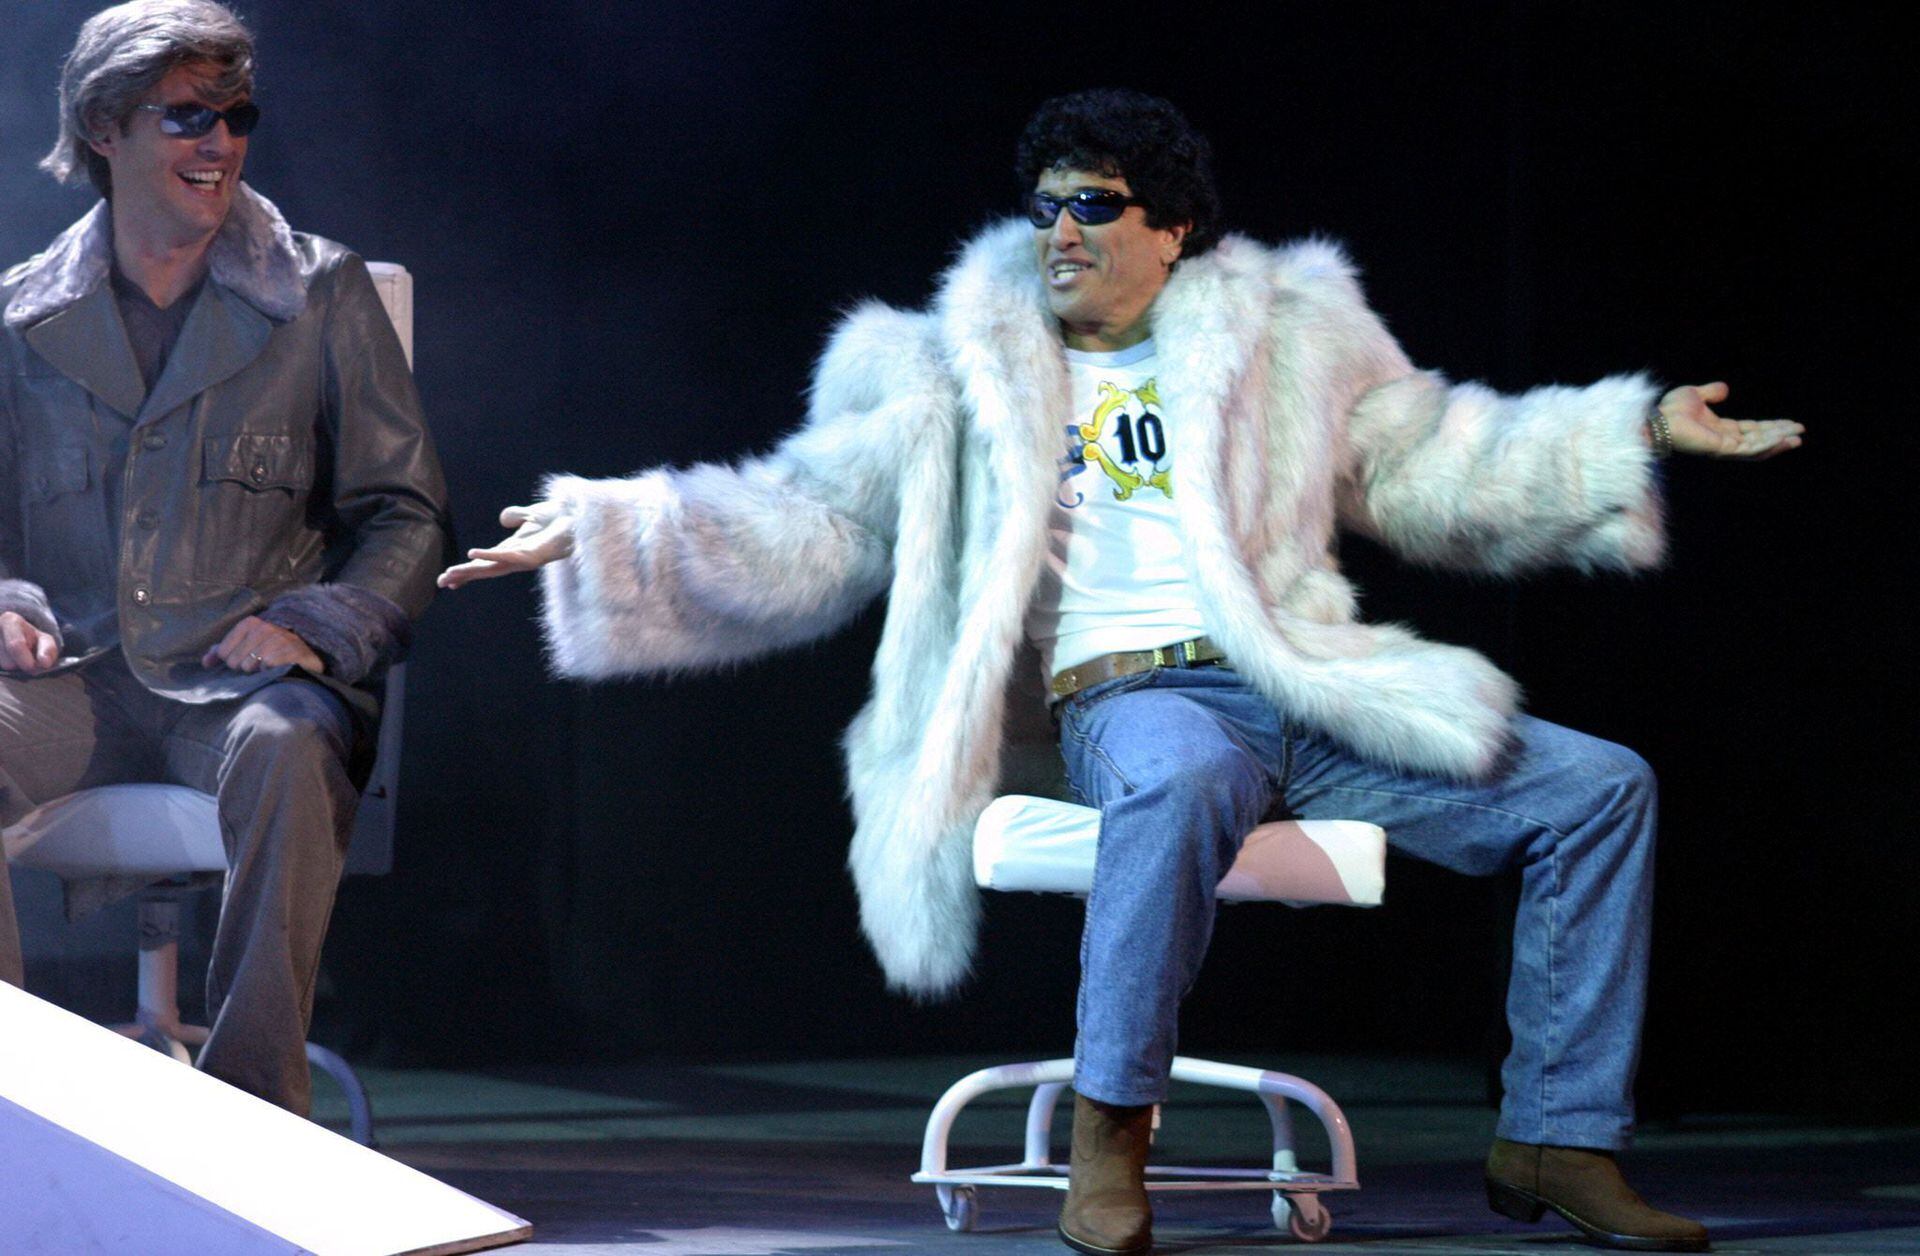 Emilio Bardi encarna a Diego Maradona adulto en el momento en el que firma su contrato con Barcelona. Fue en 2004, en un musical "estilo Broadway" llamado El diez, entre el cielo y el infierno.